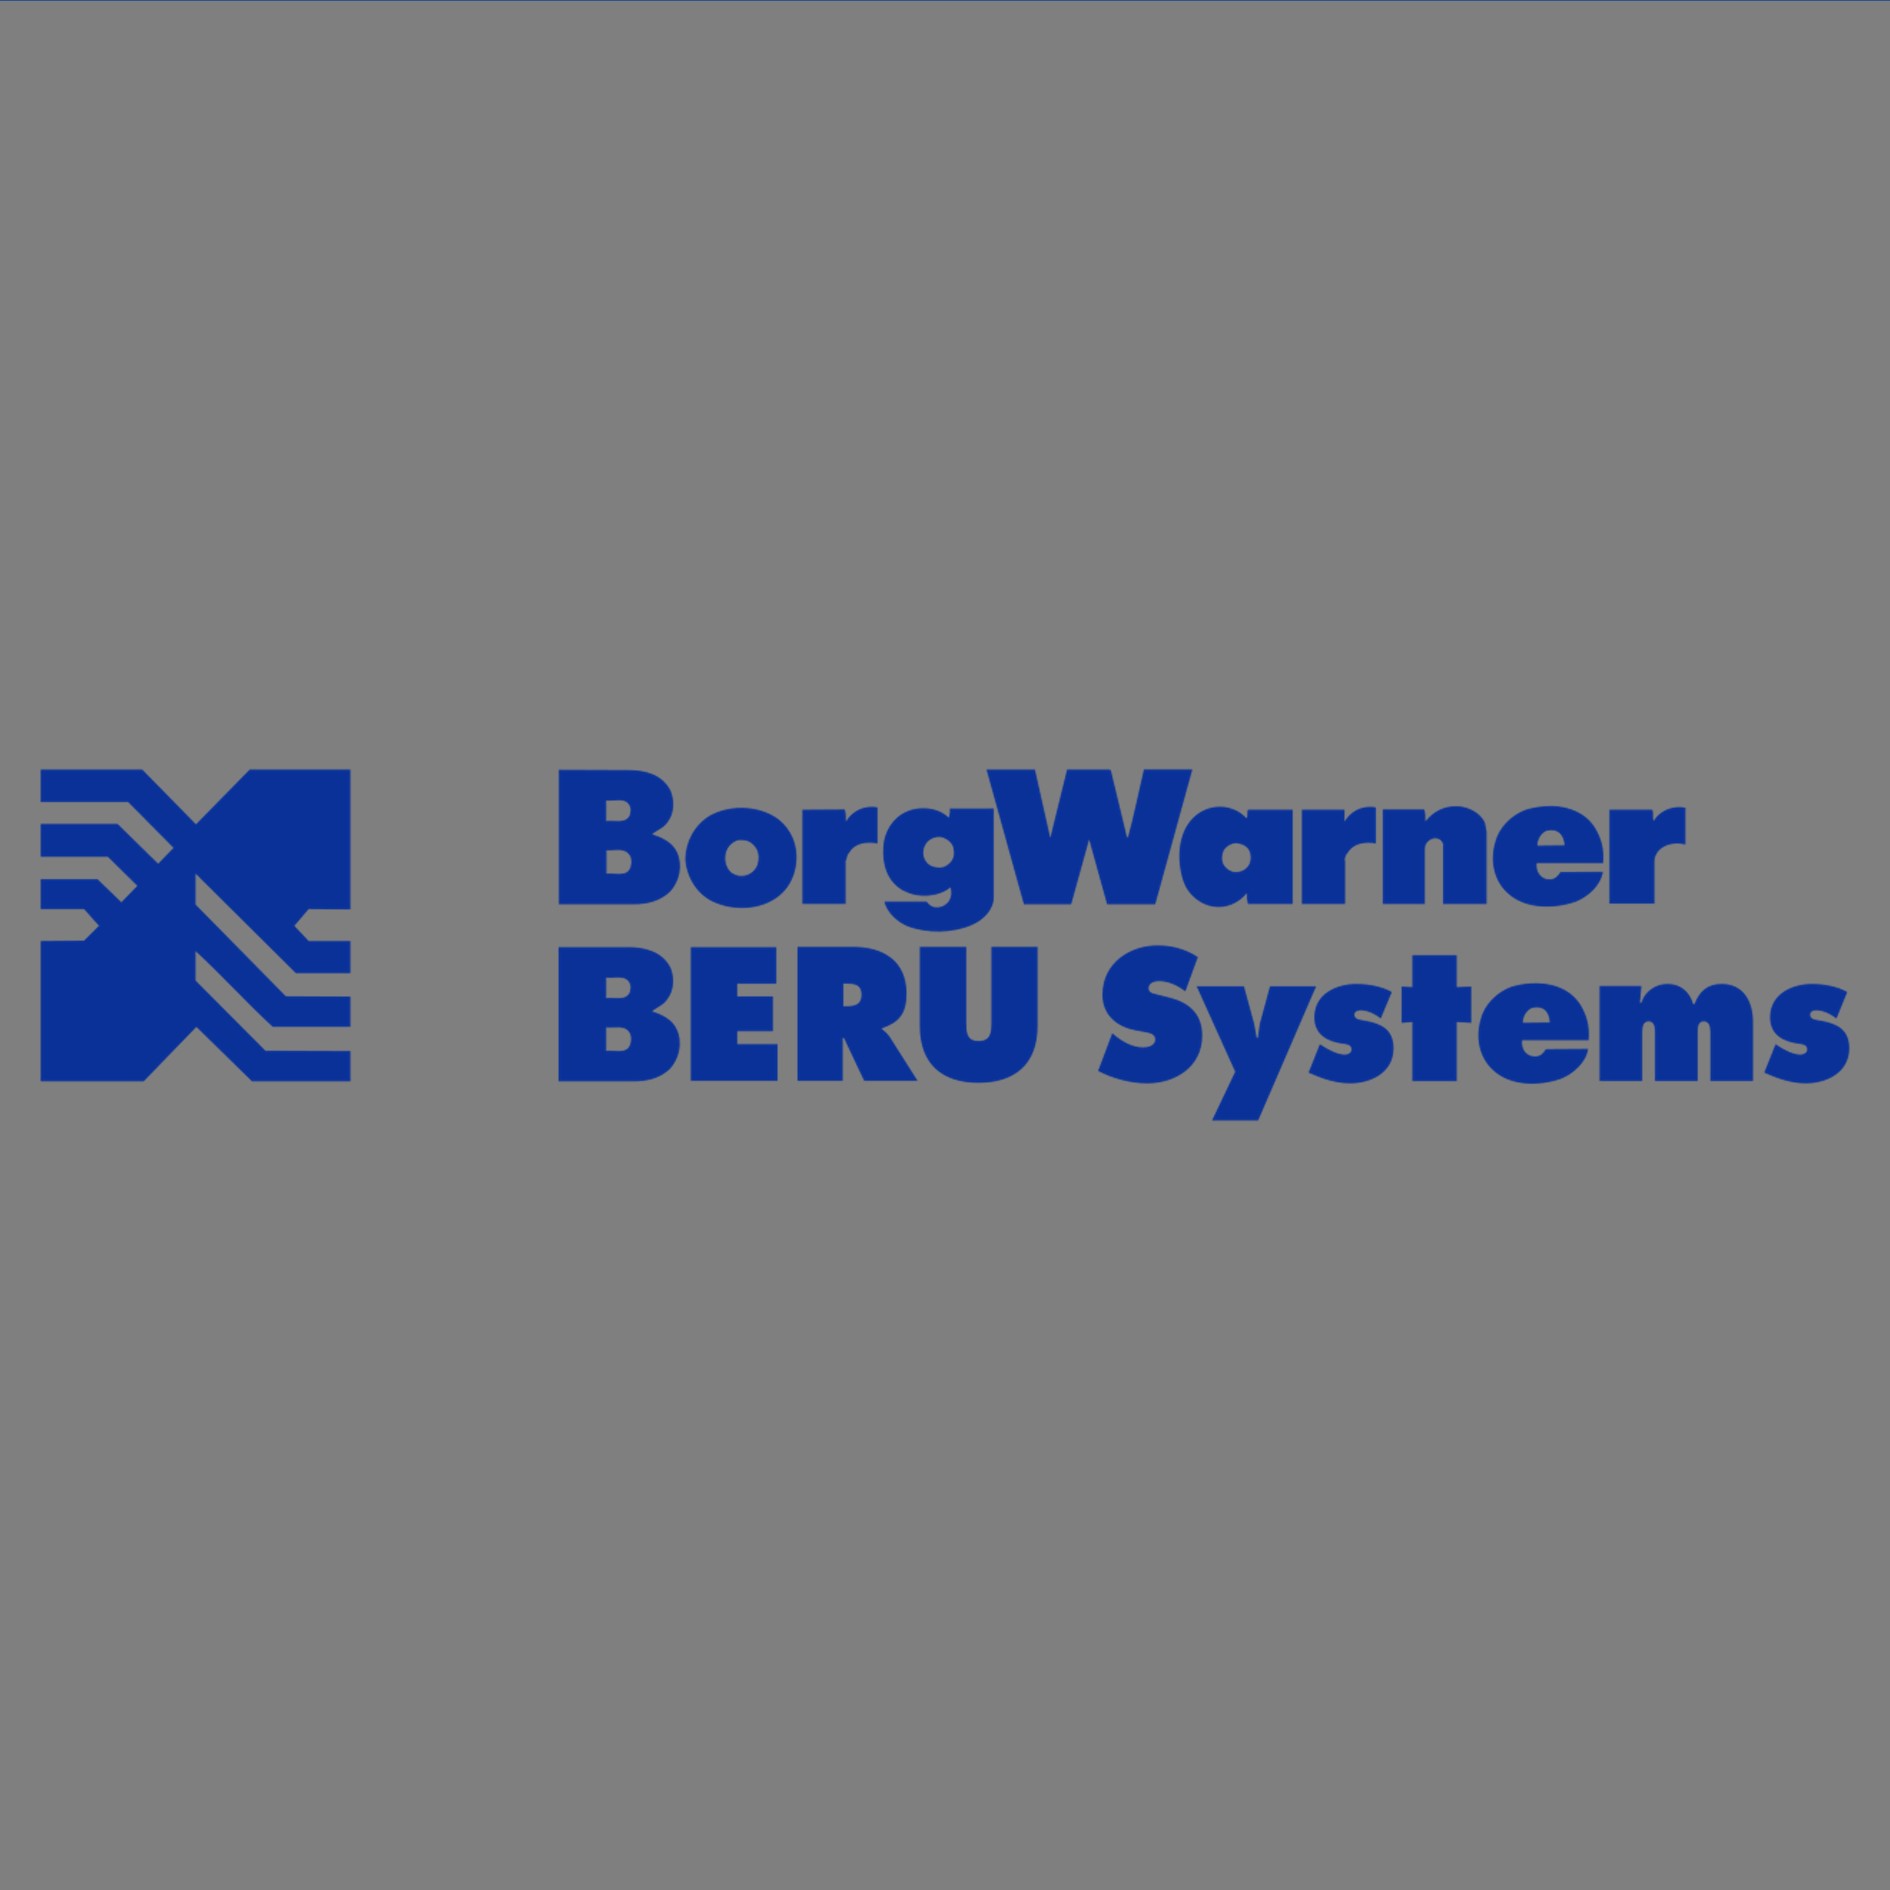 Steuergerät Glühzeit Borgwarner (beru) GSE116 für Mercedes Benz Mercedes Benz